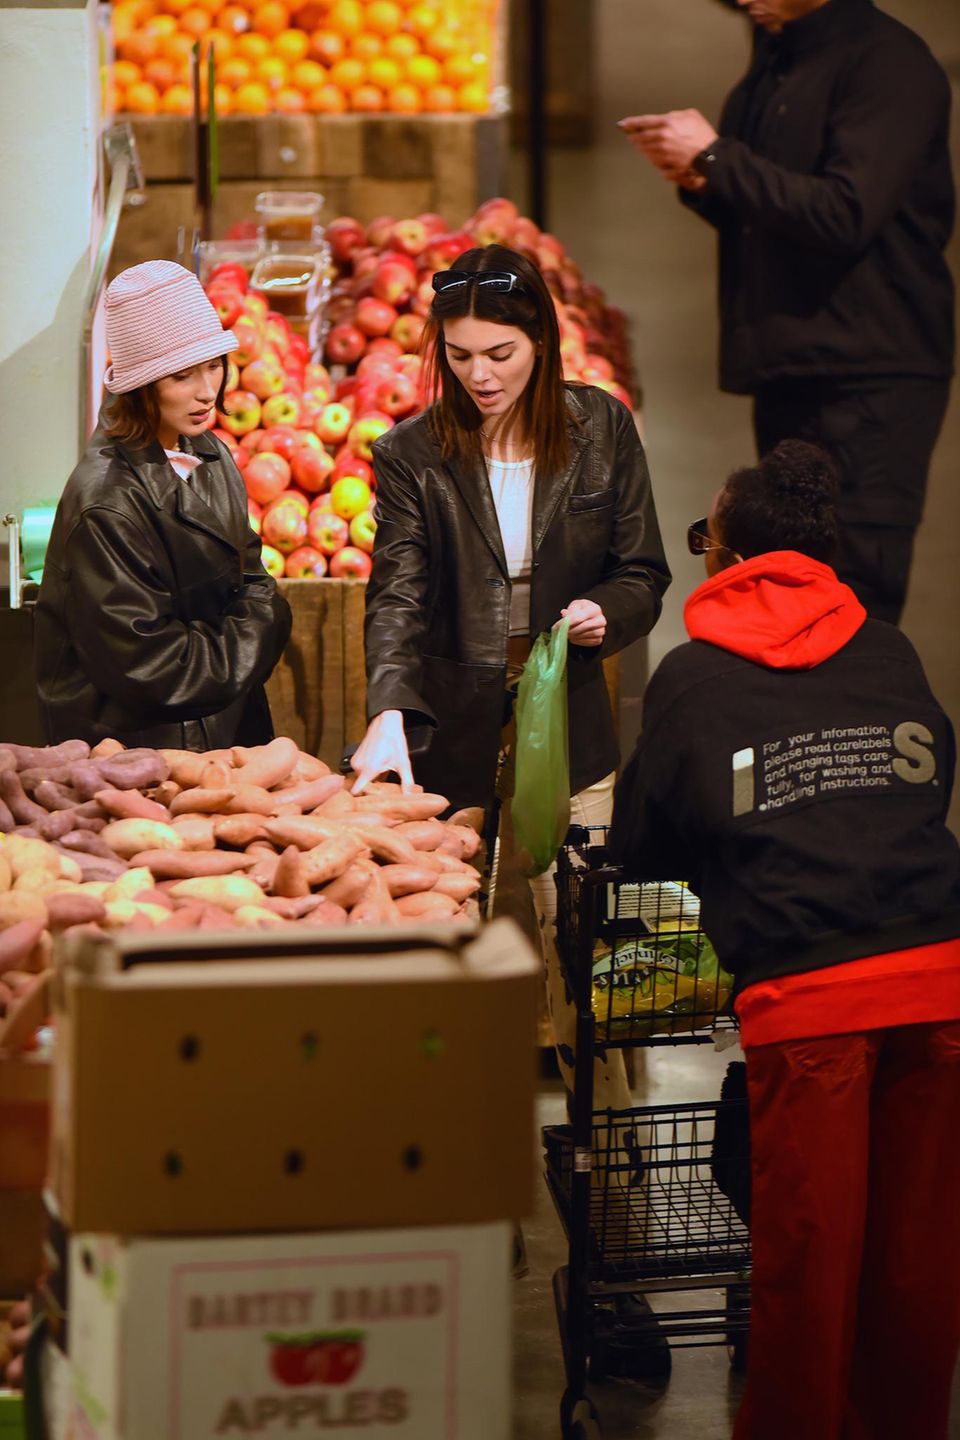 Glamour-Girls Kendall Jenner, Bella Hadid und Justine Skye achten auf ihre Ernährung und greifen auch im Supermarkt zu frischem Obst und Gemüse.